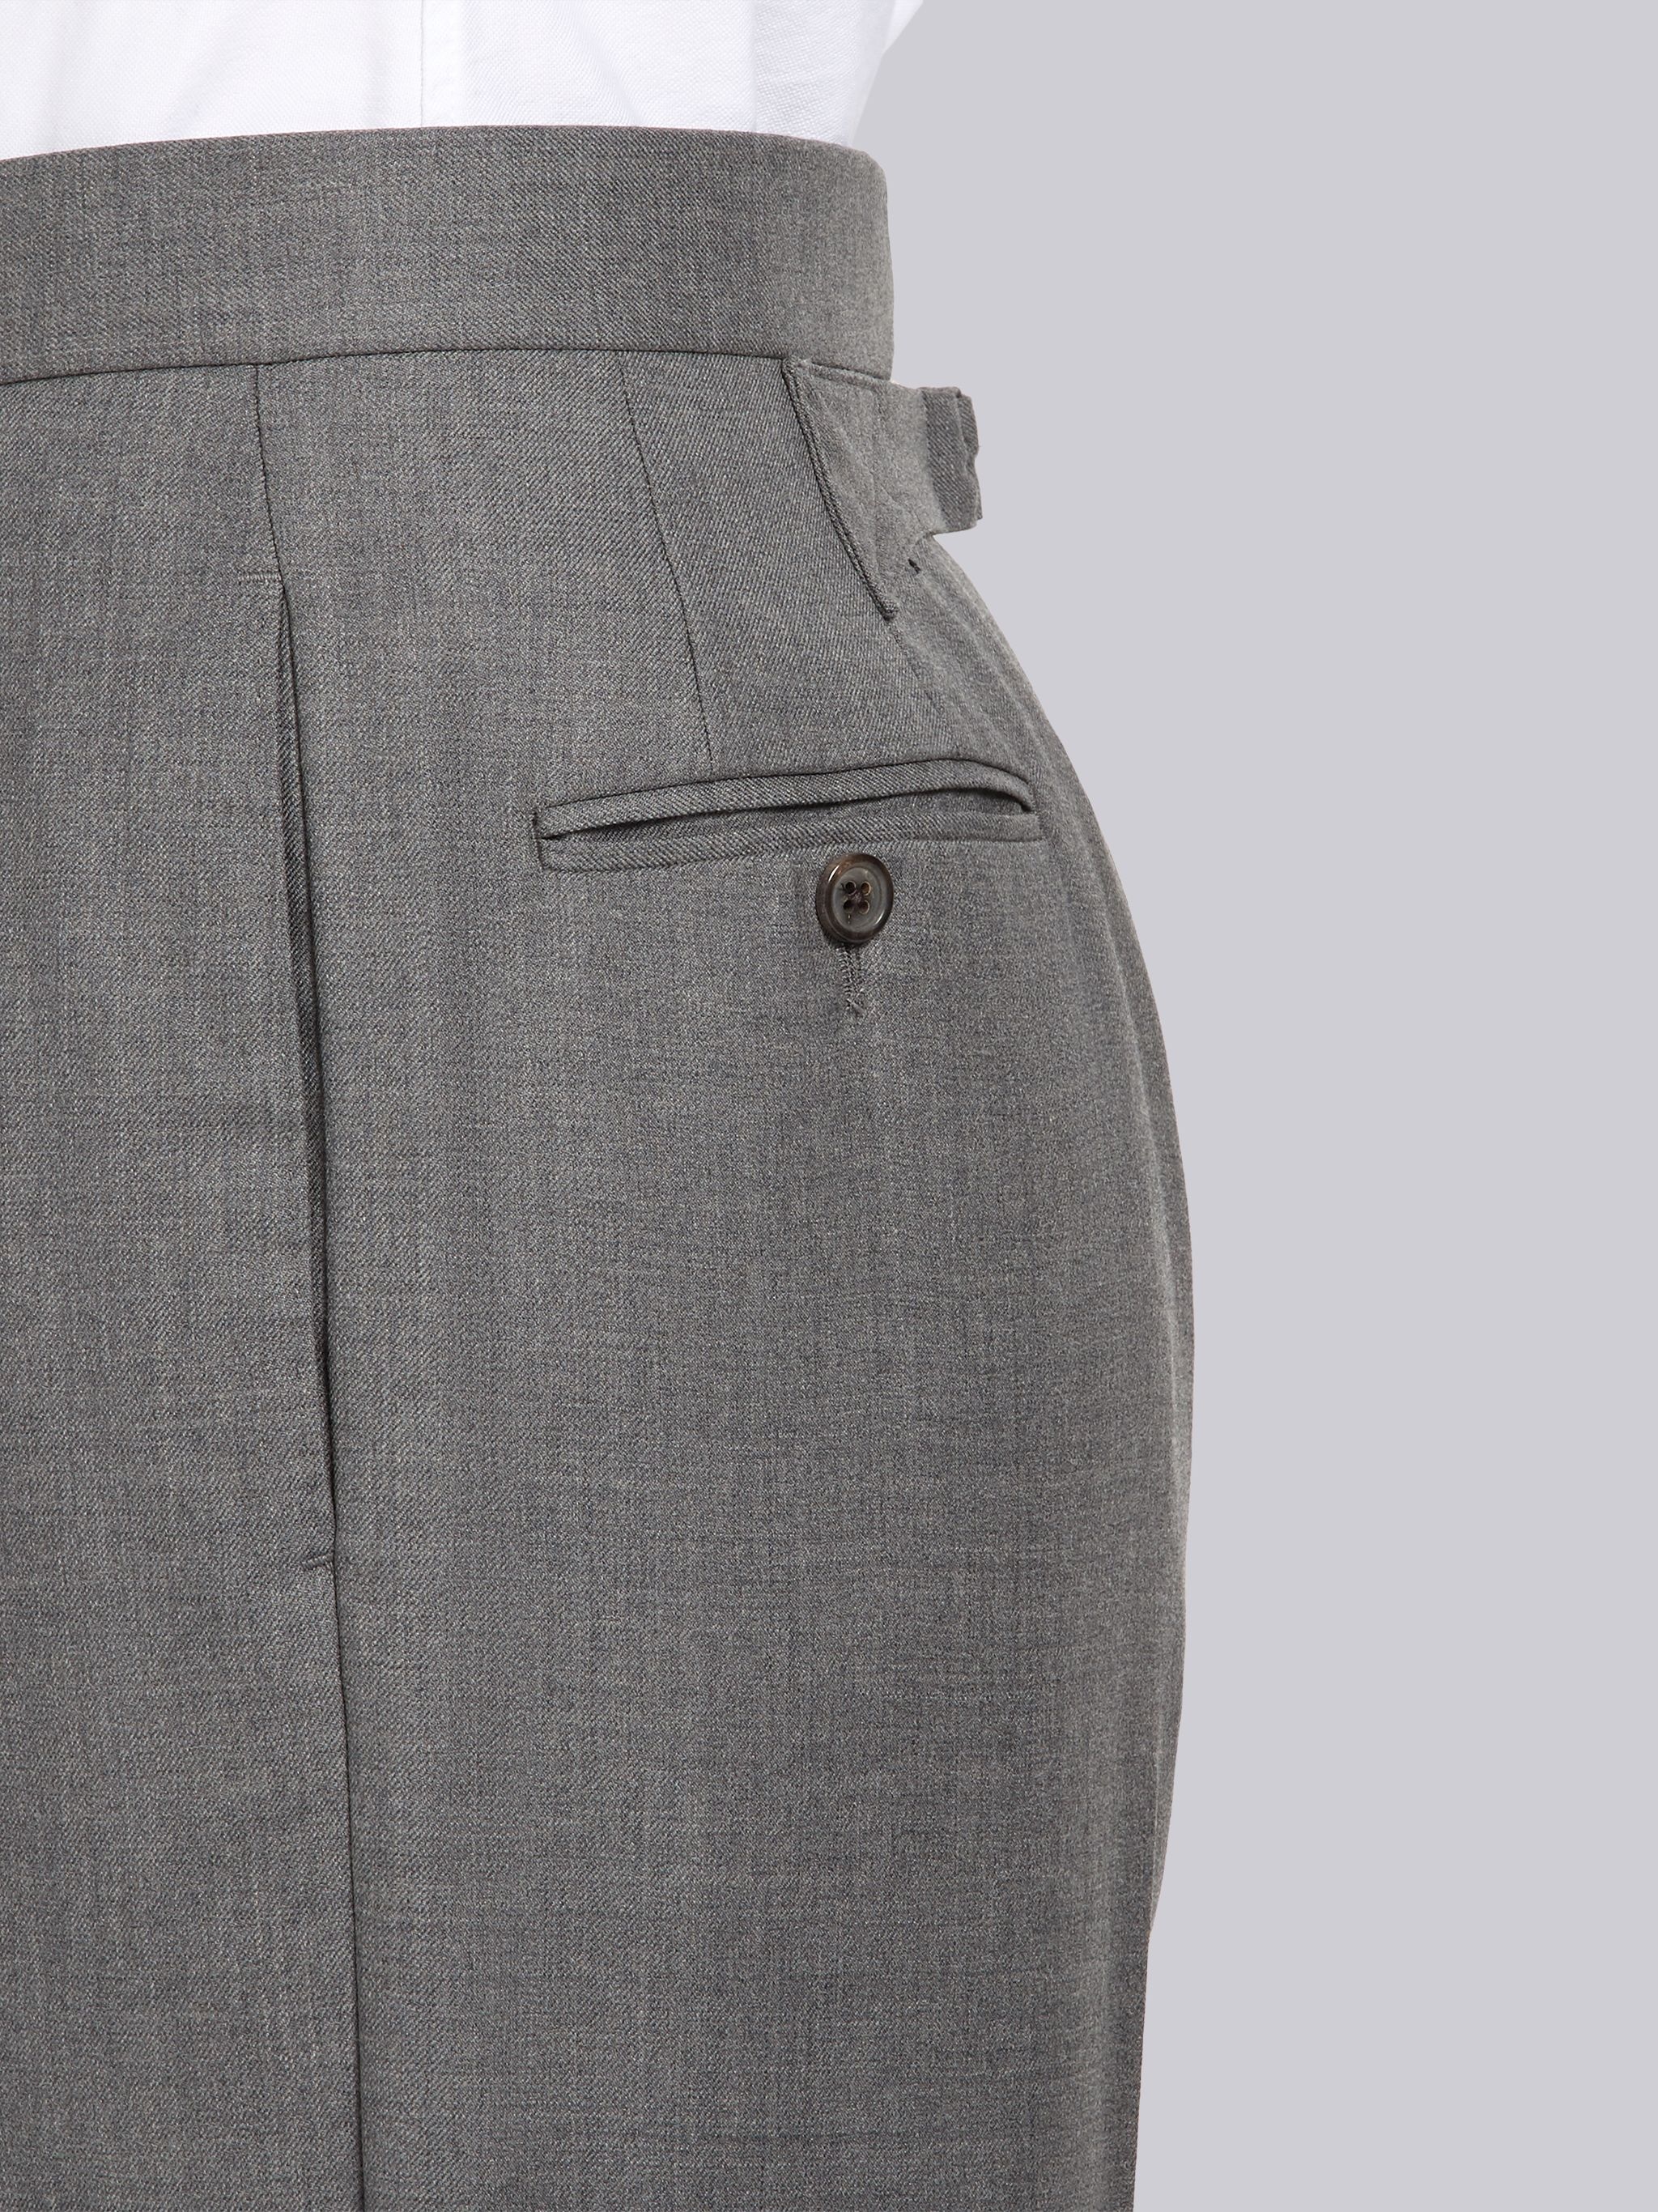 Medium Grey Super 120's Twill Menswear Fit Classic Trouser - 6